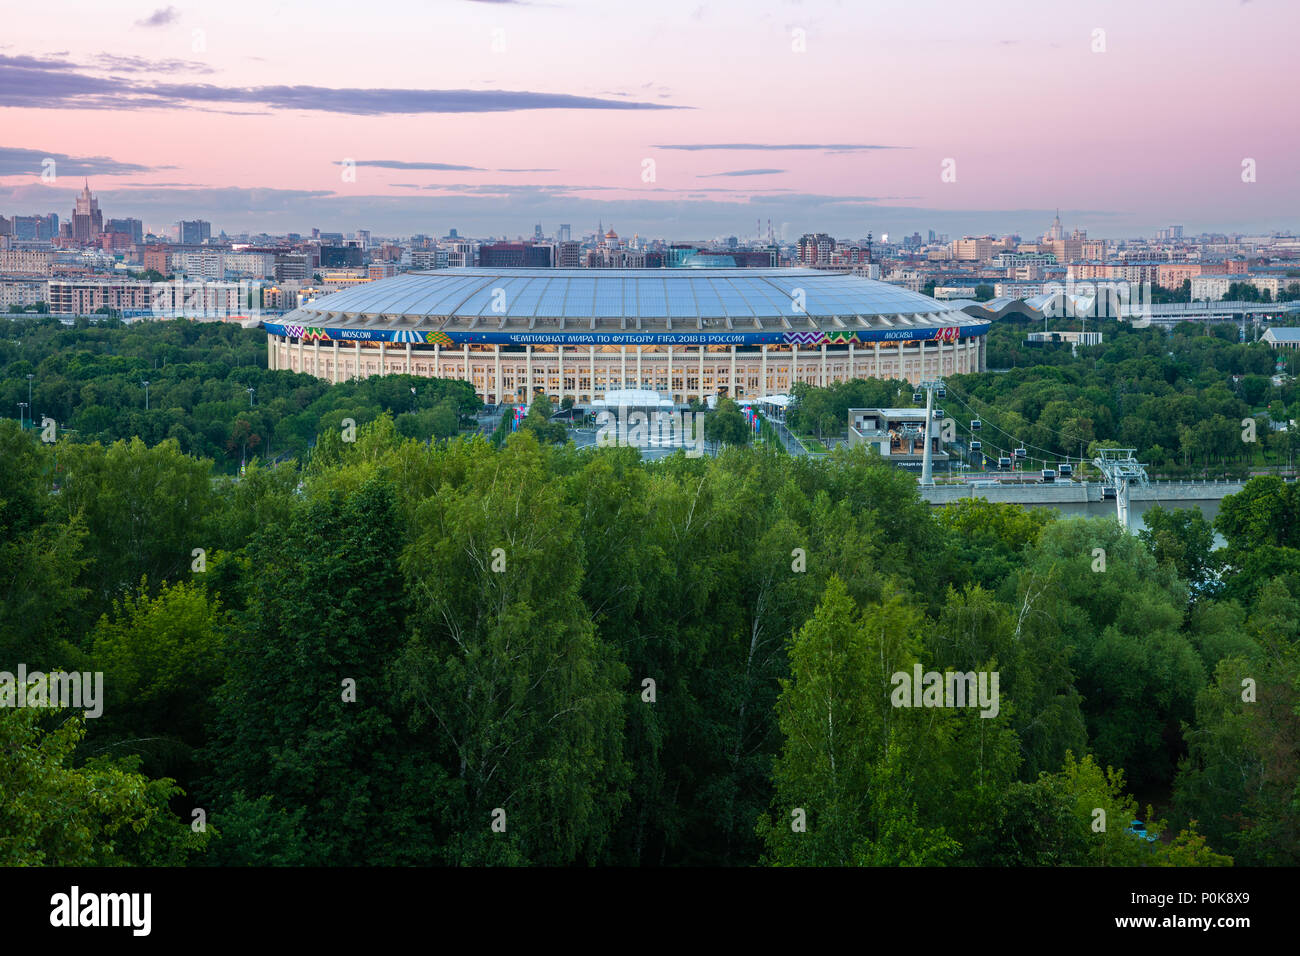 Moscou, Russie - 06 juin 2018 : l'avis de stade Luzhniki de moineaux observation deck, le stade principal de la Coupe du Monde FIFA 2018, le 06 juin 201 Banque D'Images